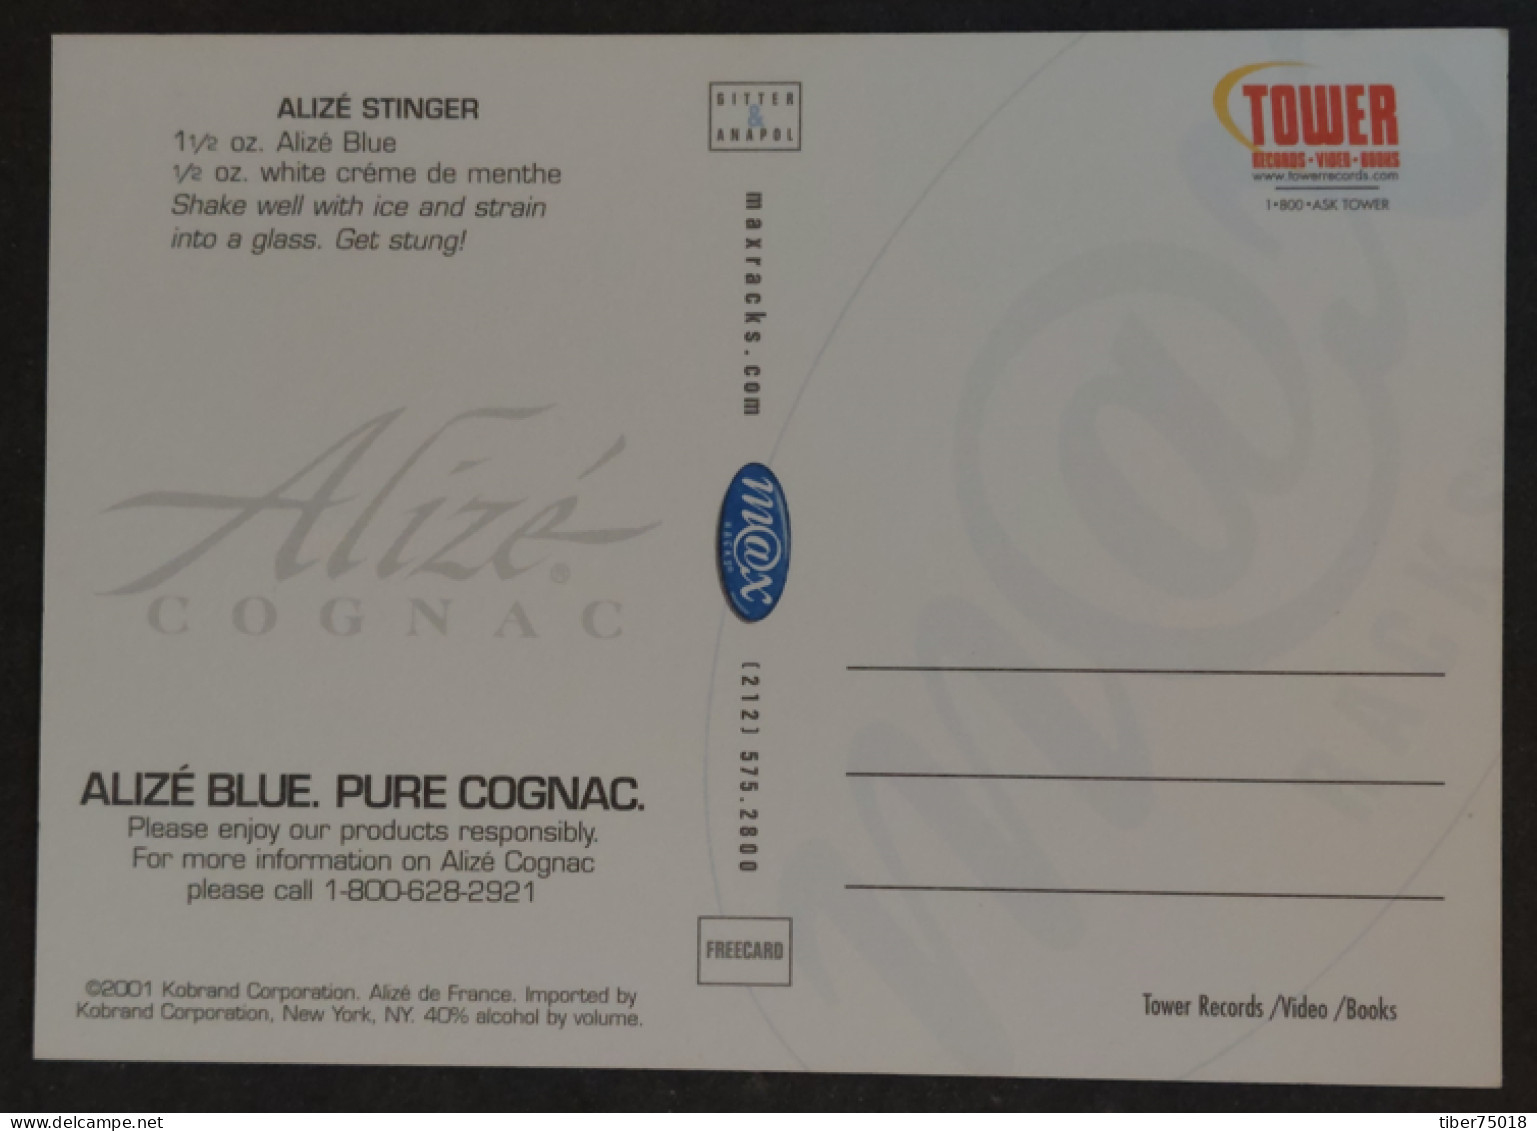 Carte Postale (Tower Records) Alizé Blue. Pure Cognac (boisson - Alcool) Suits Your Sense Of Style. - Advertising